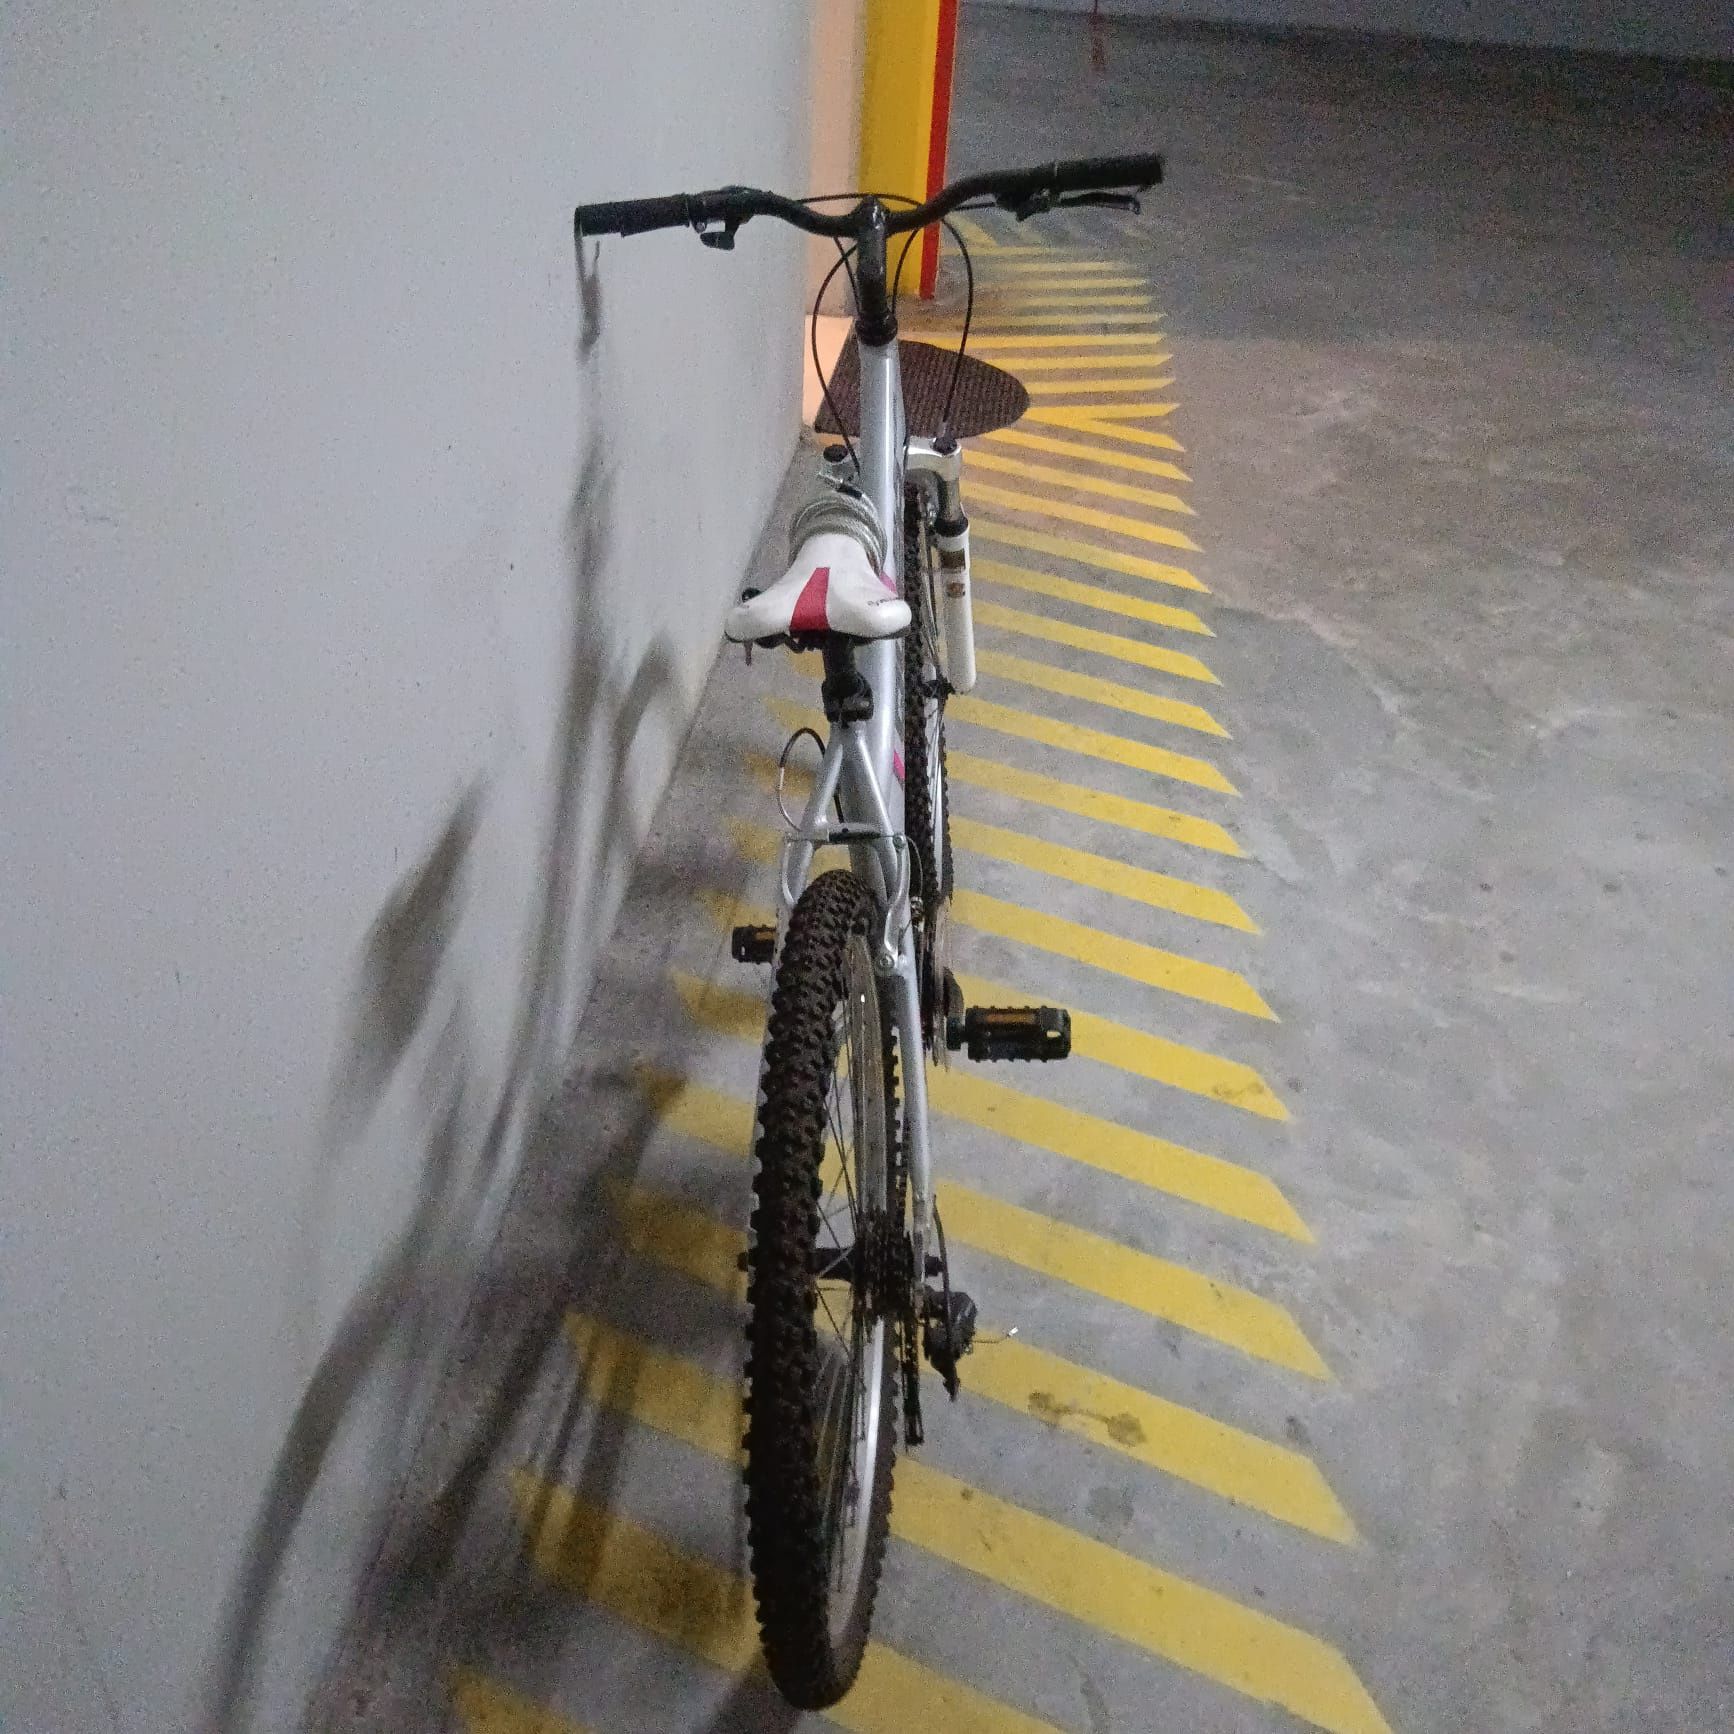 Bicicleta em óptimo estado